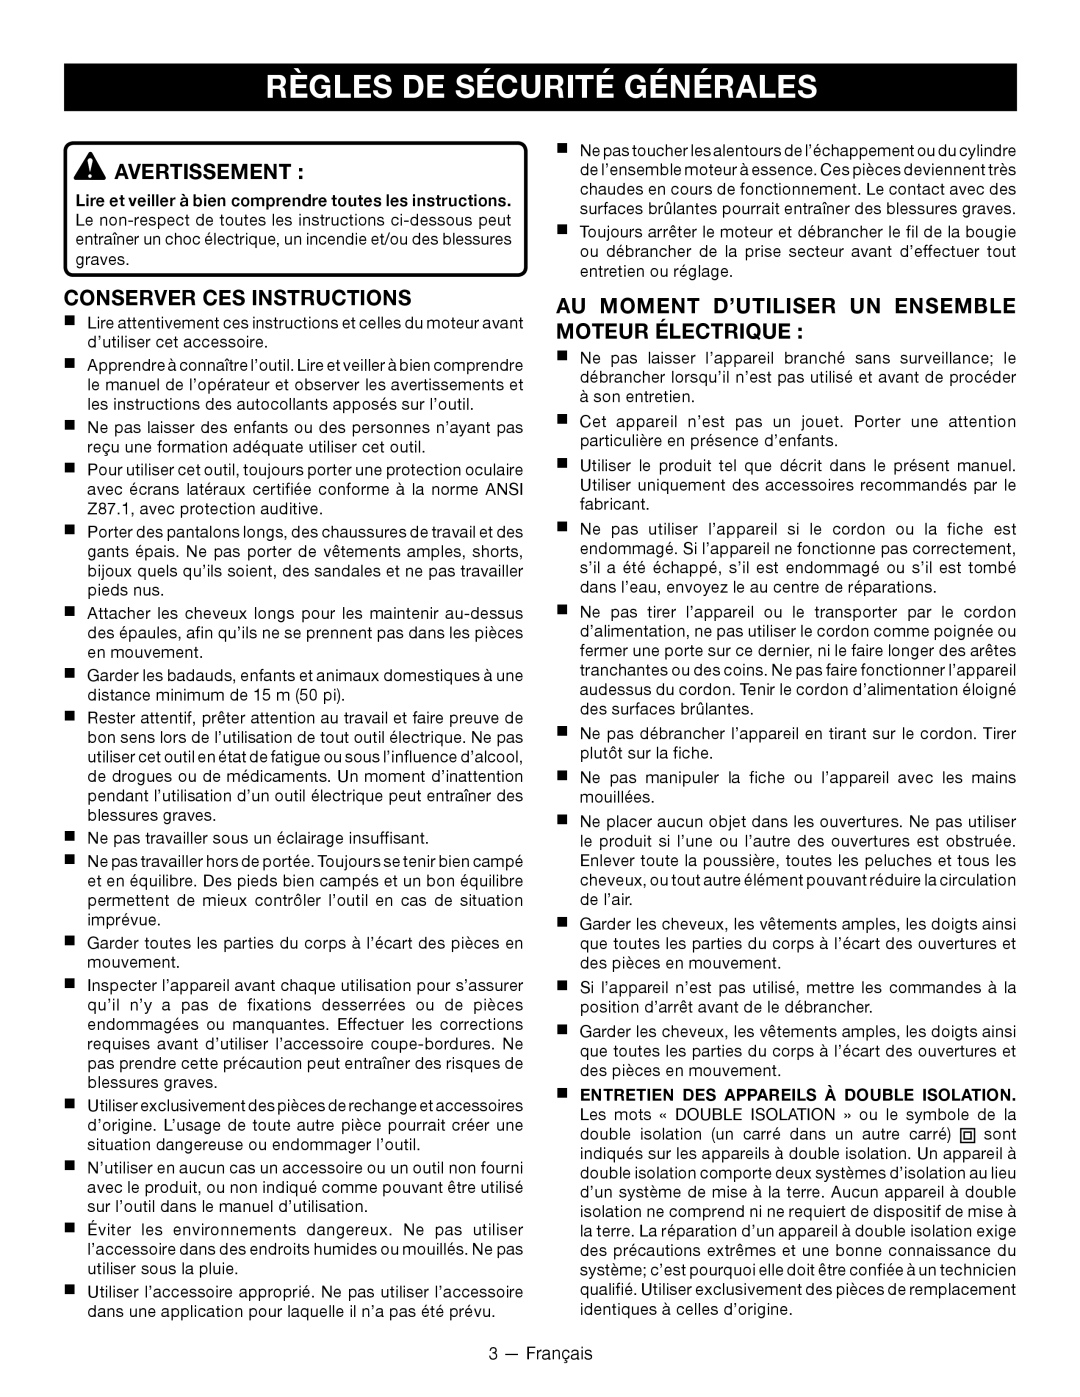 Ryobi RY15518 manuel dutilisation Règles De Sécurité Générales, Avertissement, Conserver Ces Instructions 